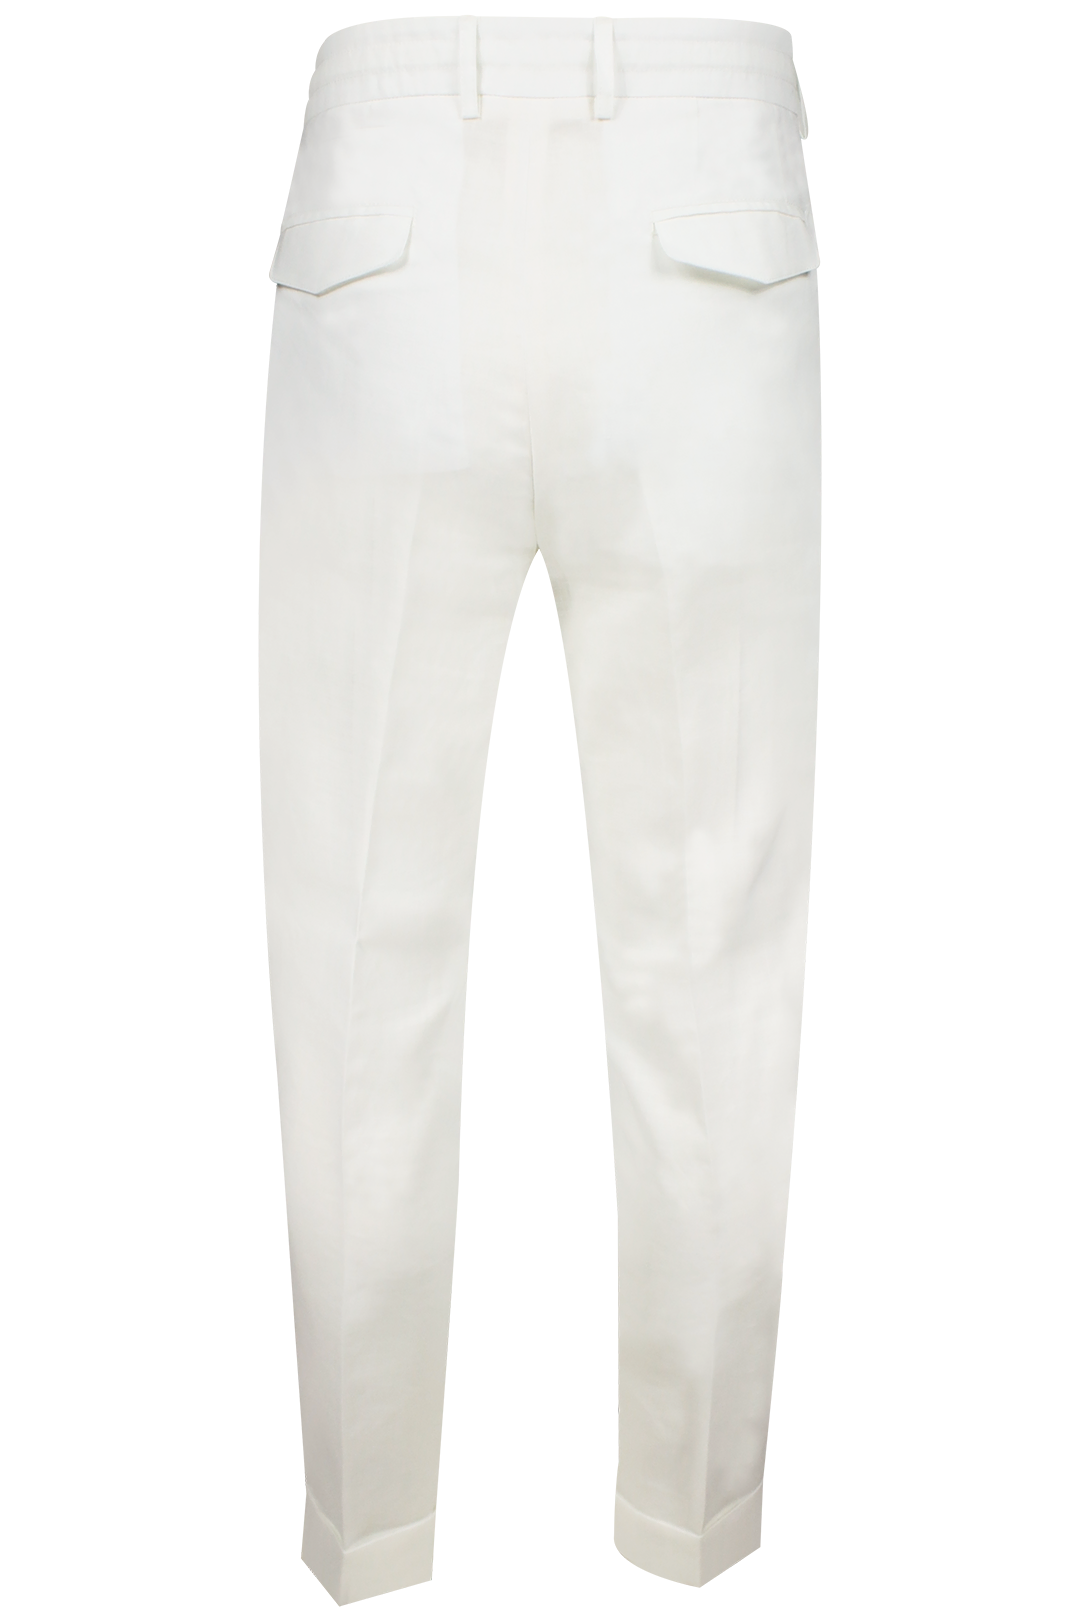 Pantalone con due pince e coulisse in lino bianco retro